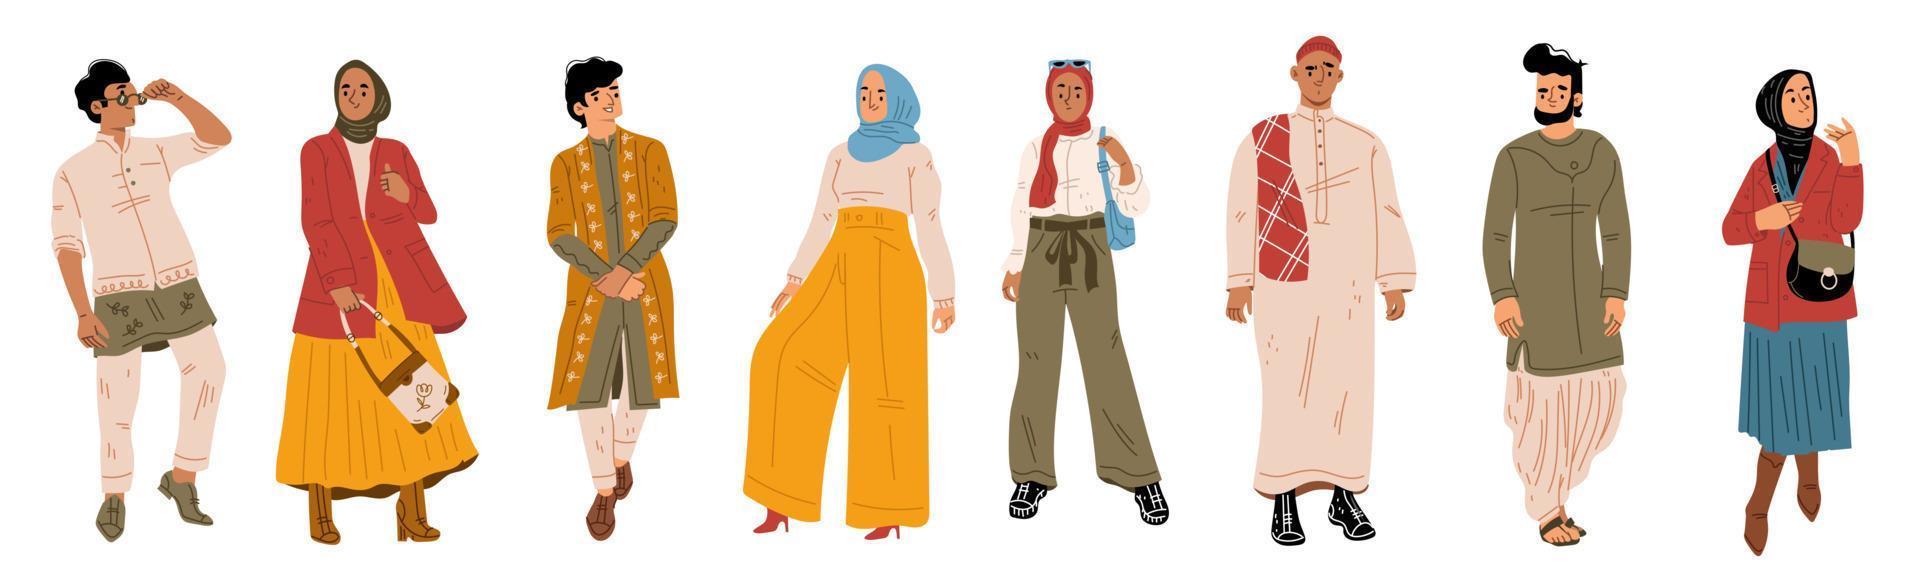 árabes, jóvenes personajes masculinos y femeninos. vector